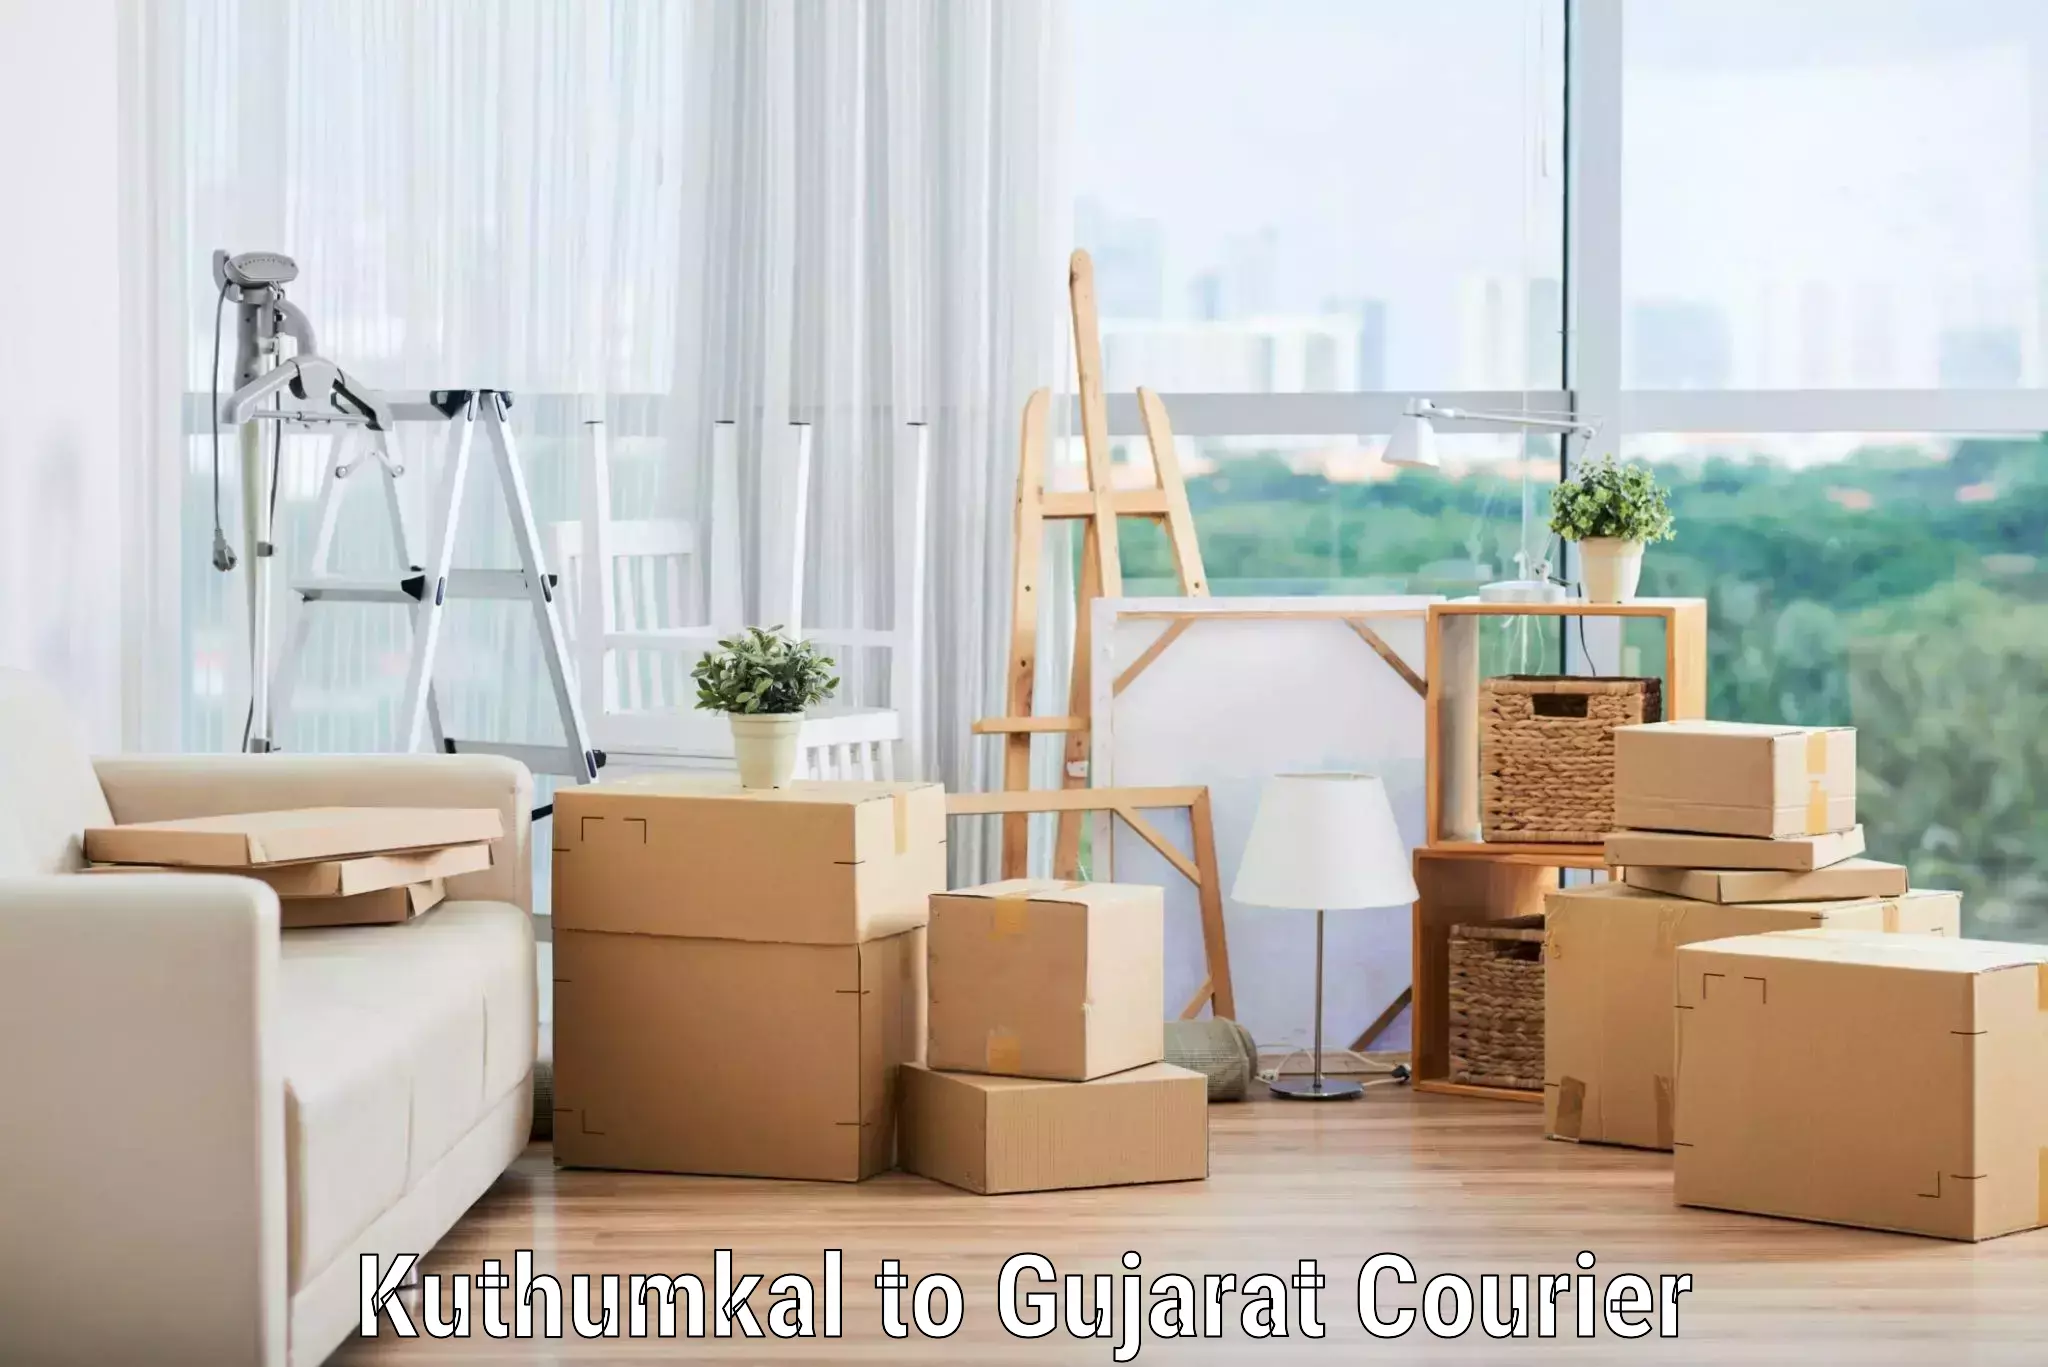 Seamless moving process Kuthumkal to Gujarat